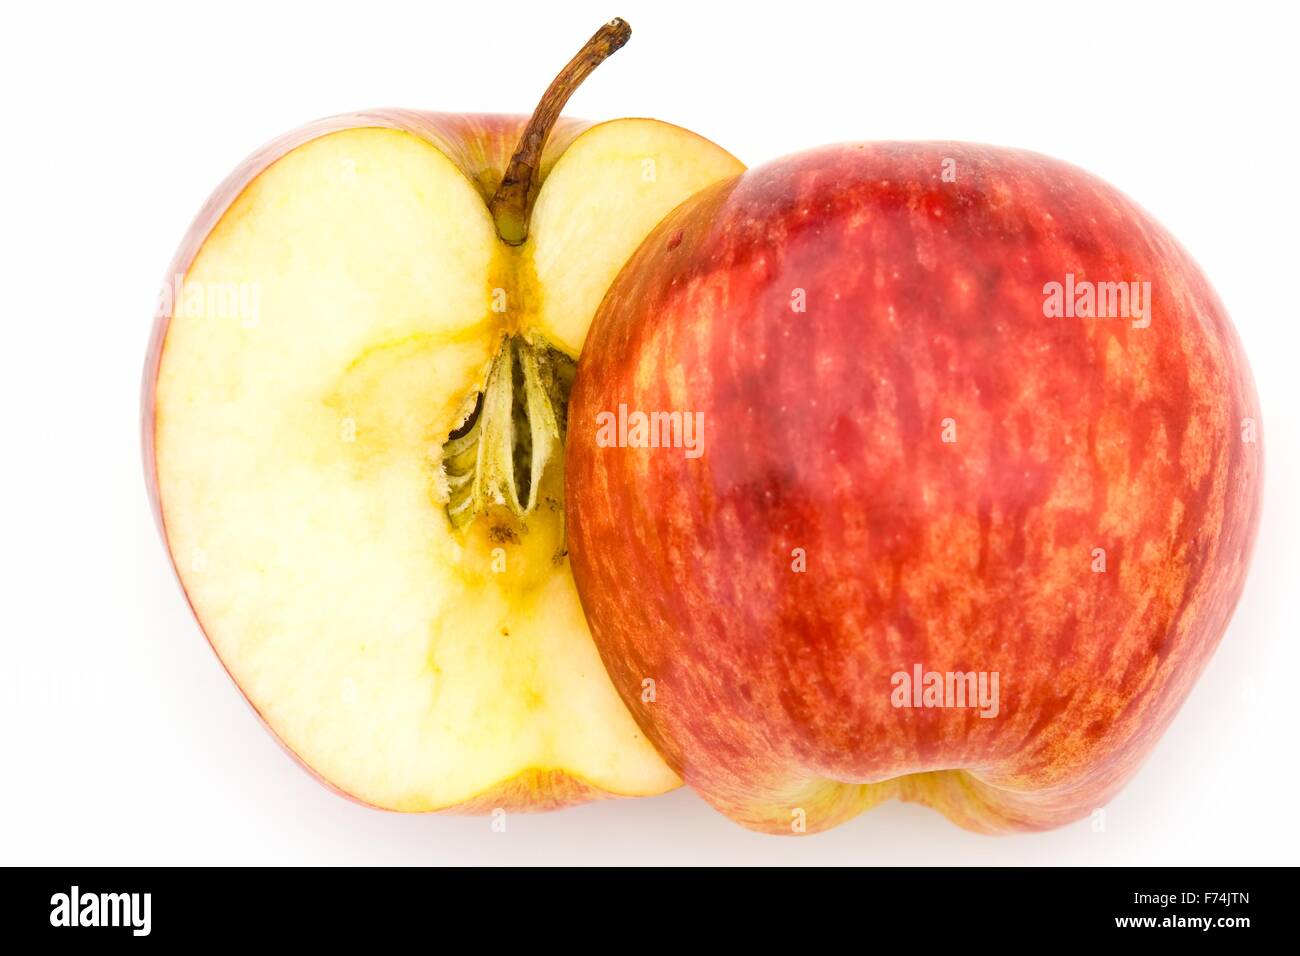 https://c8.alamy.com/comp/F74JTN/juicy-red-apple-F74JTN.jpg